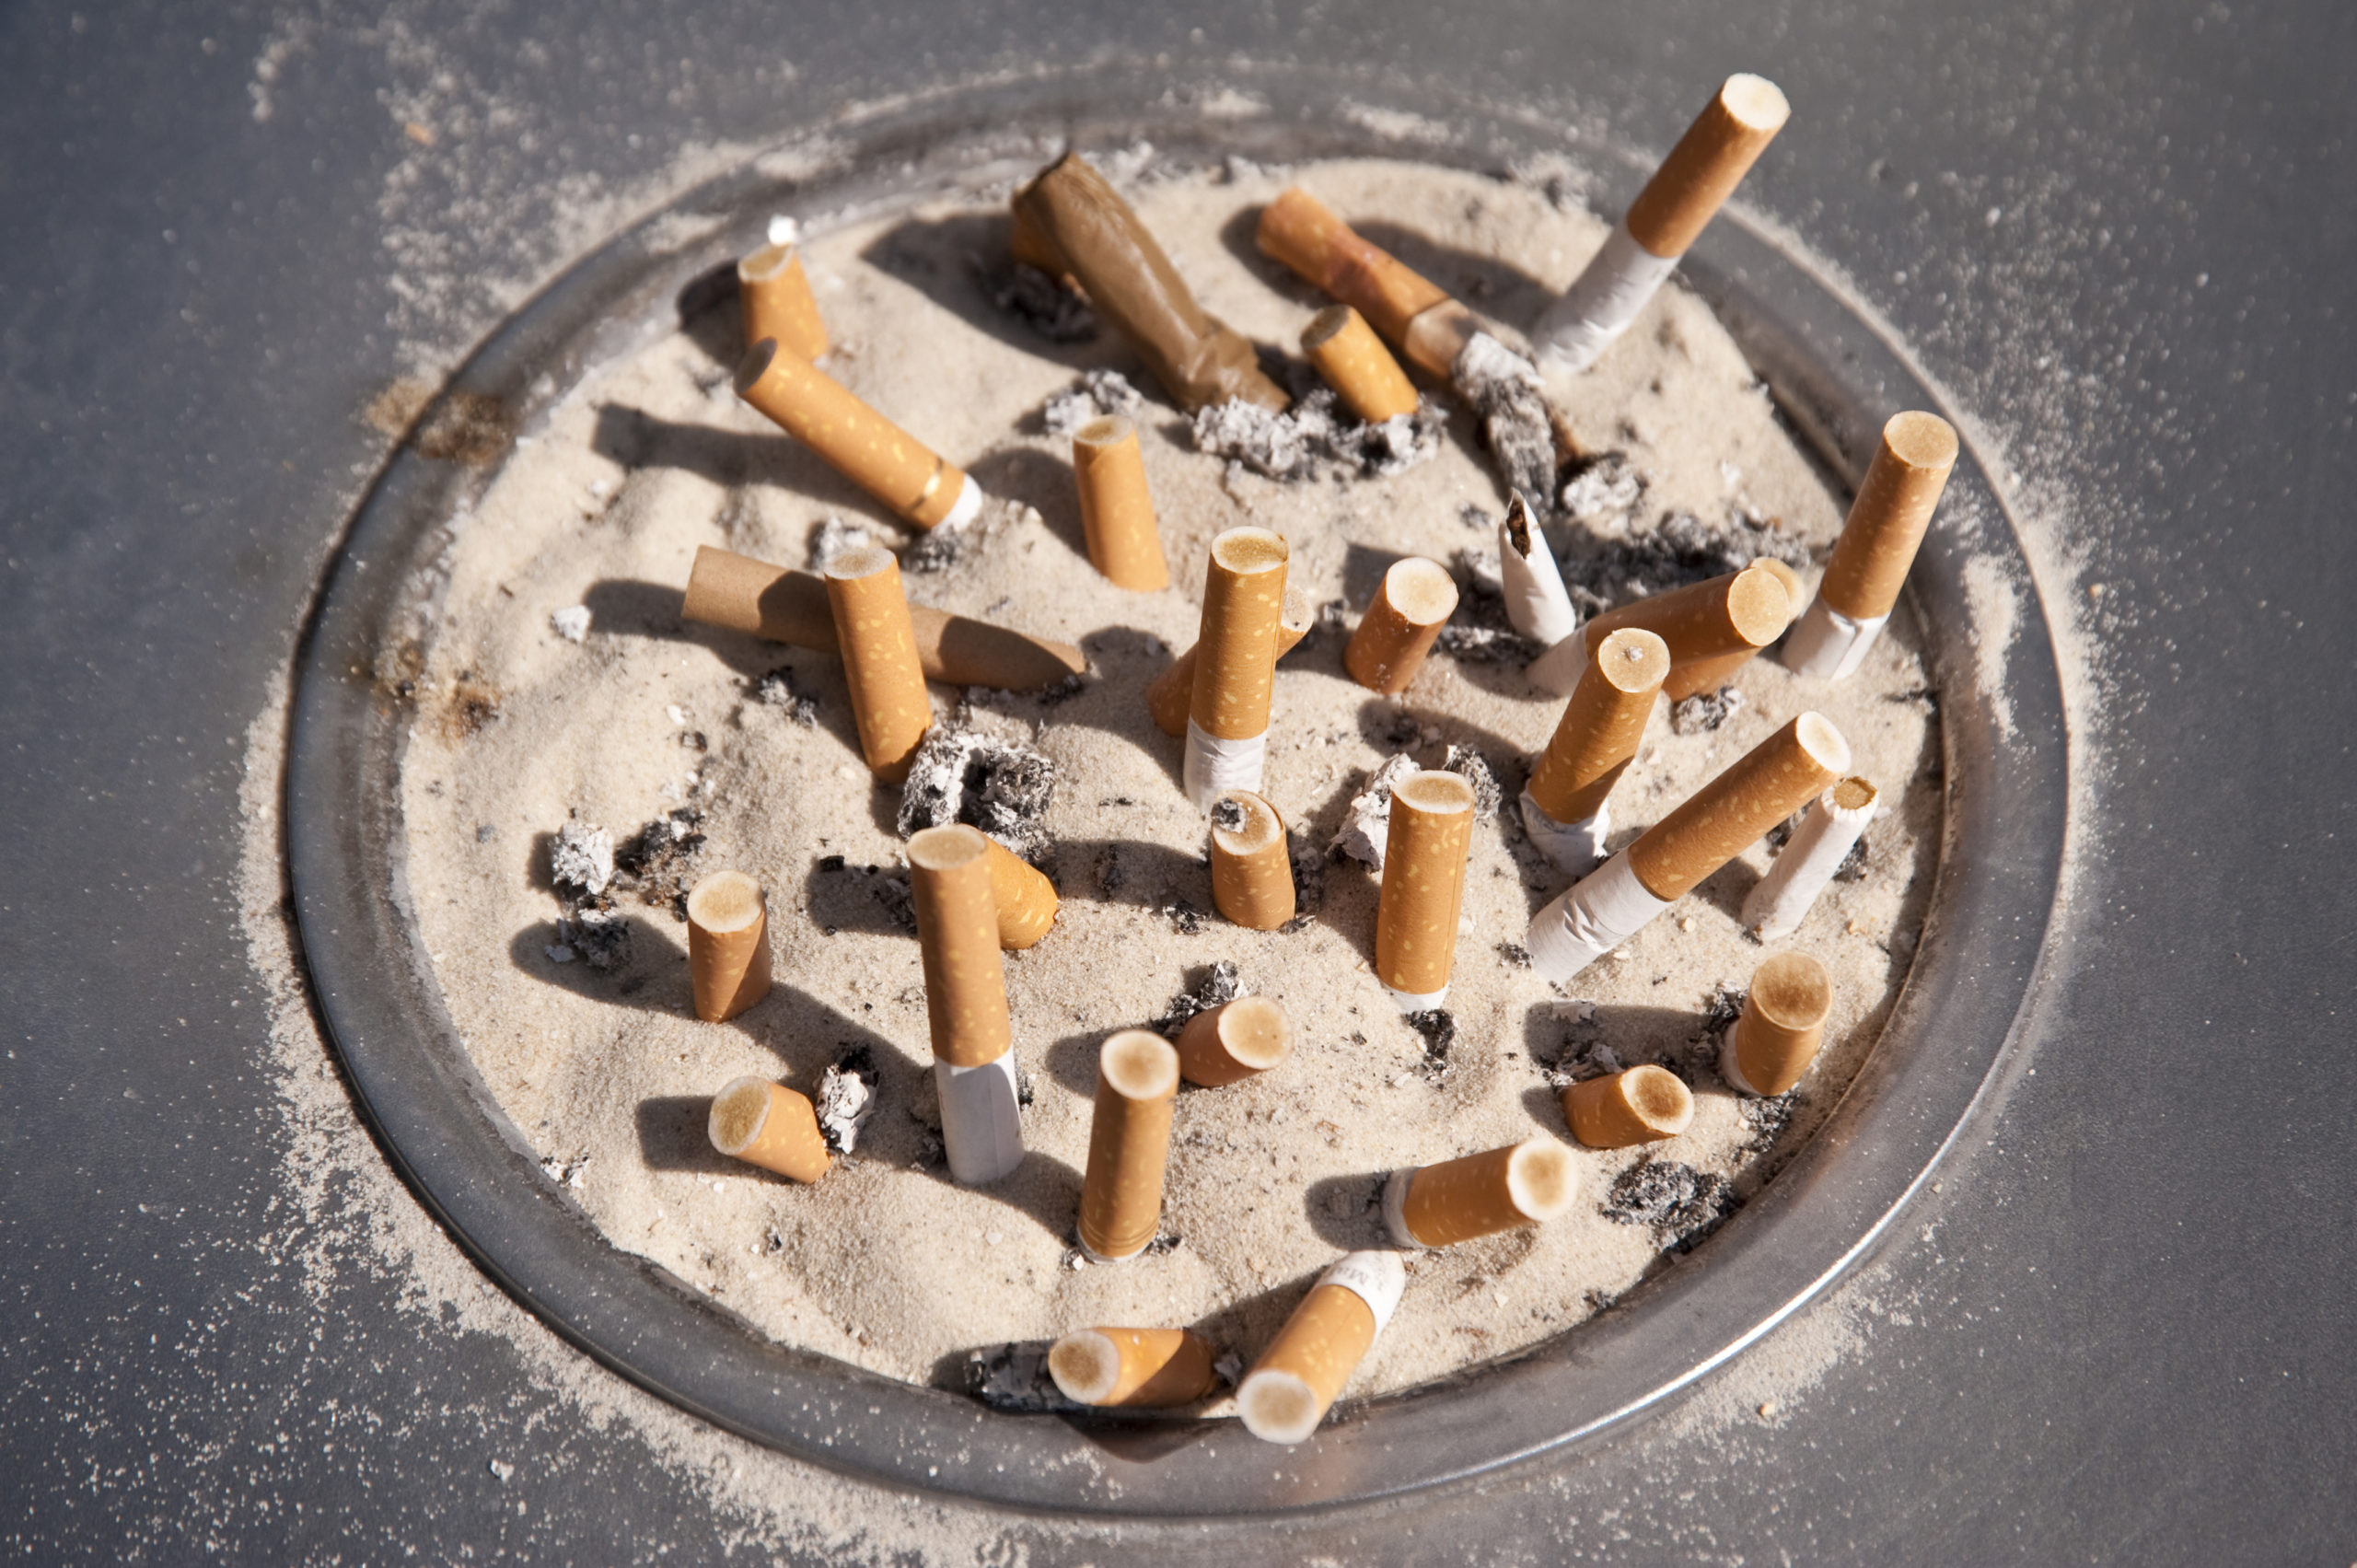 دراسة تؤكد بأن السجائر تنفث السموم حتى بعد إطفائها